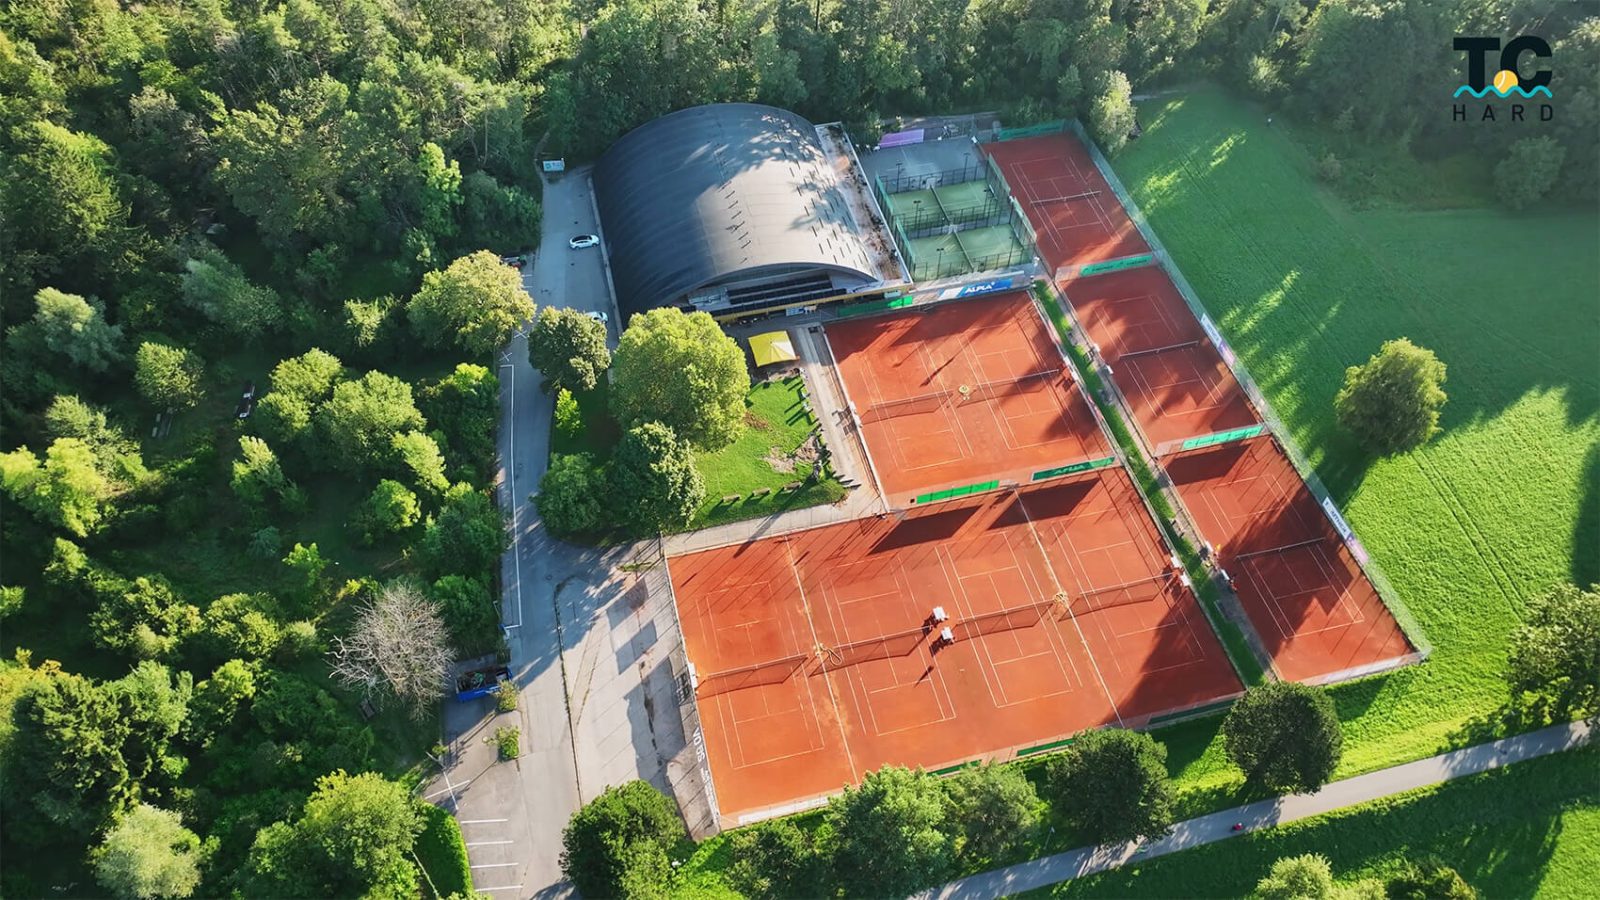 Tennisclub Hard